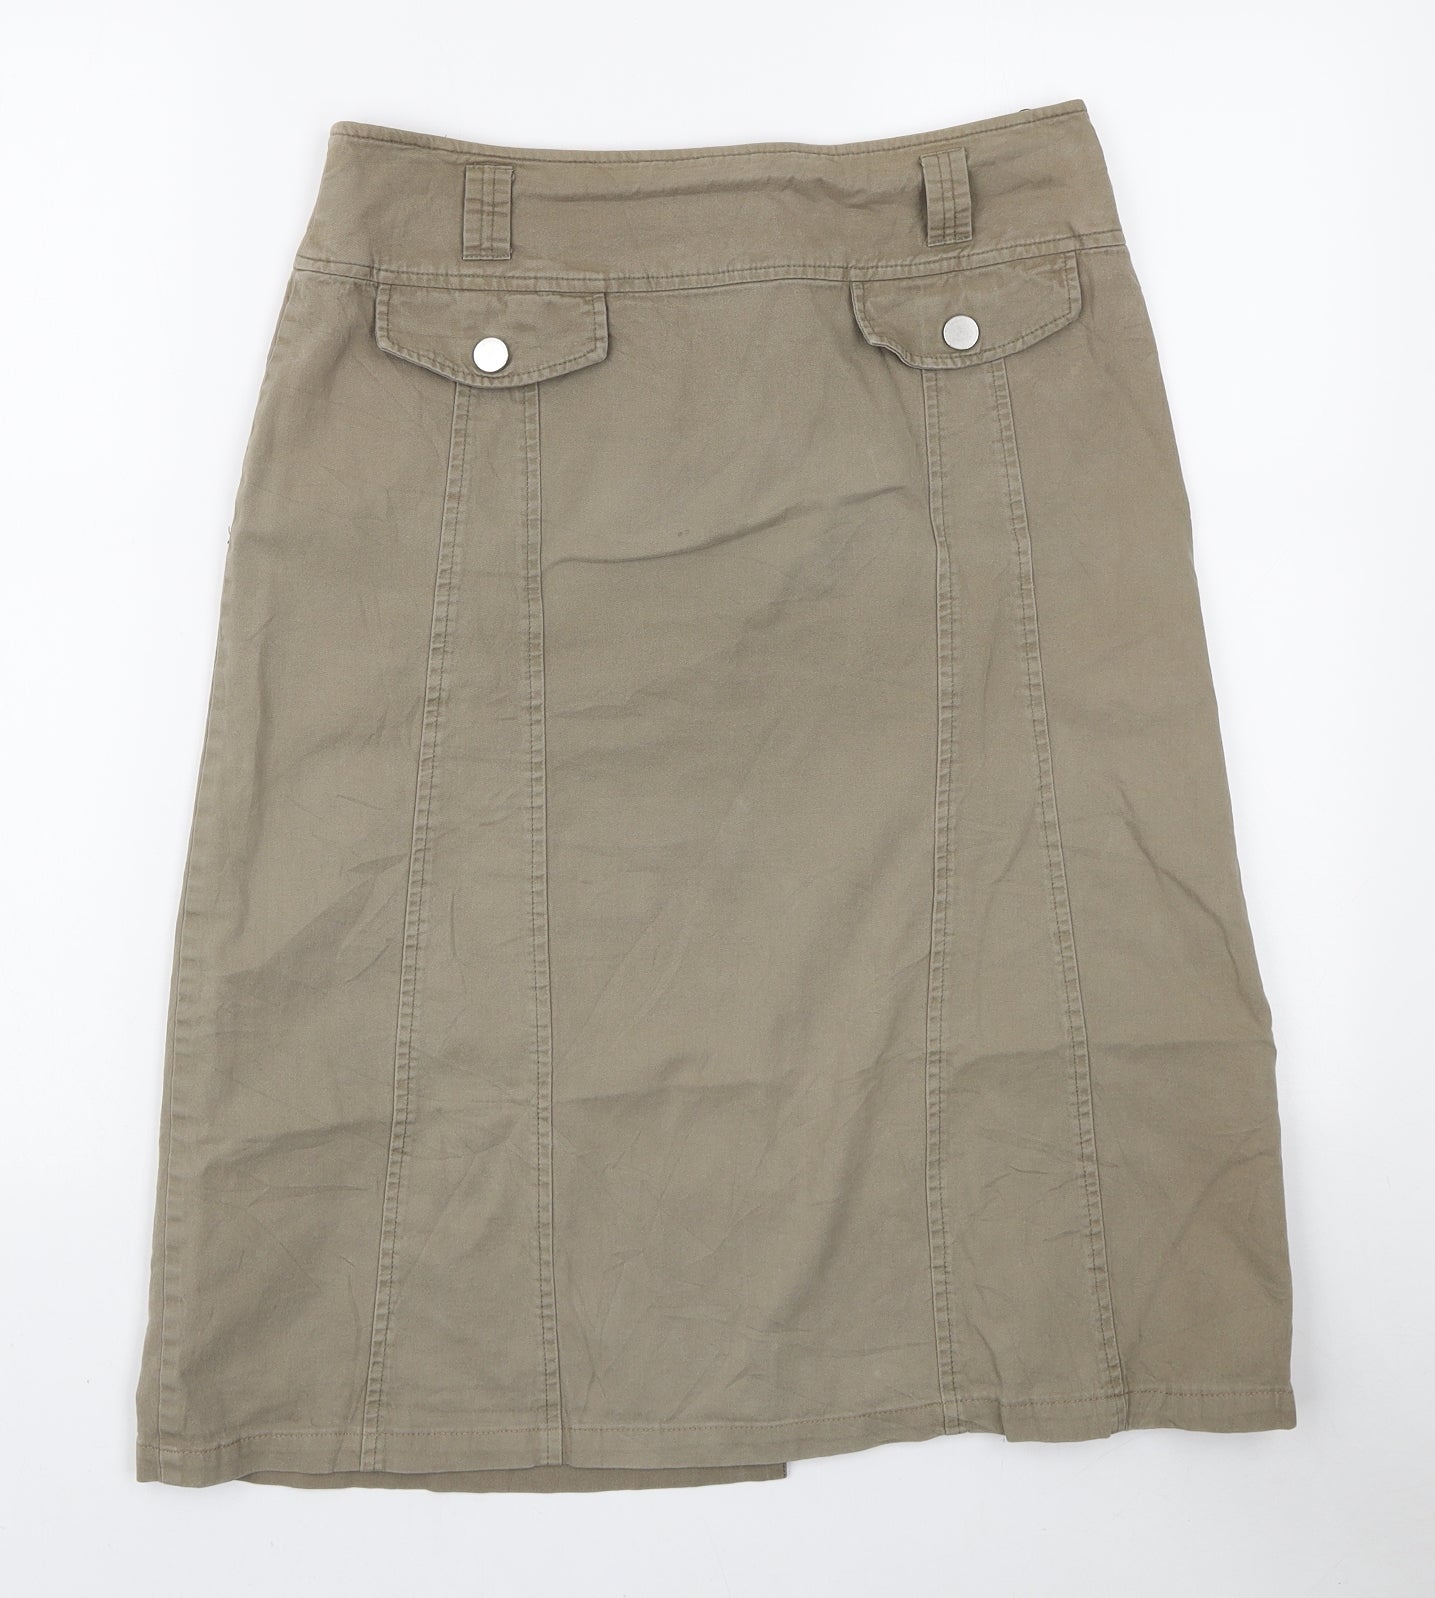 Steilmann Womens Beige Cotton A-Line Skirt Size M Zip